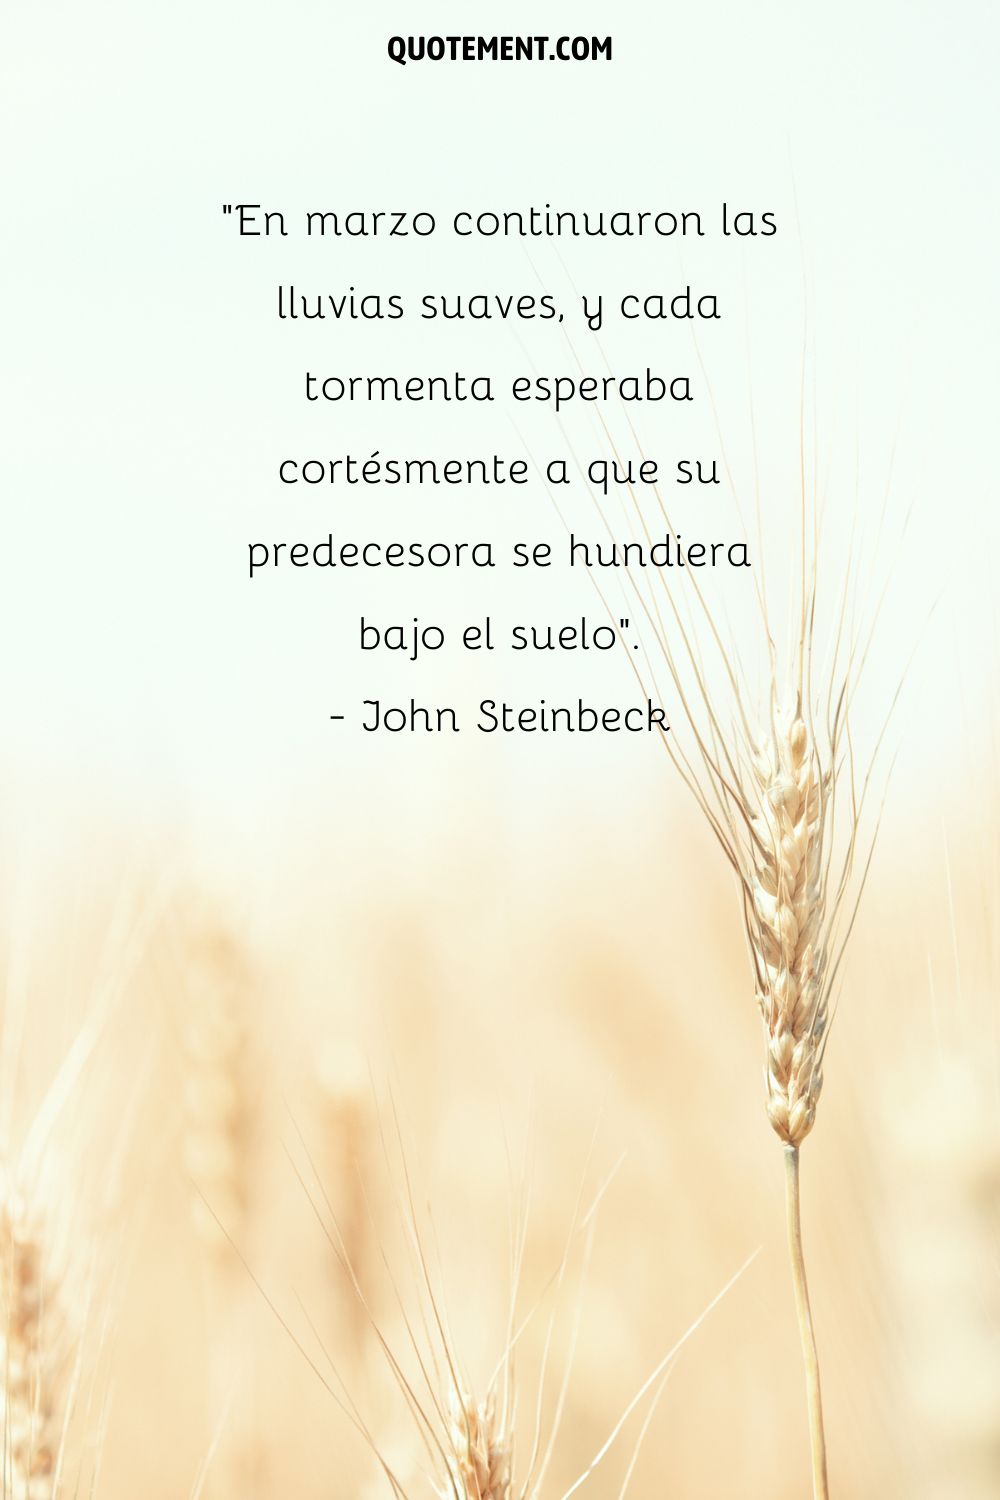 En marzo continuaron las suaves lluvias, y cada tormenta esperaba cortésmente hasta que su predecesora se hundía bajo el suelo. - John Steinbeck